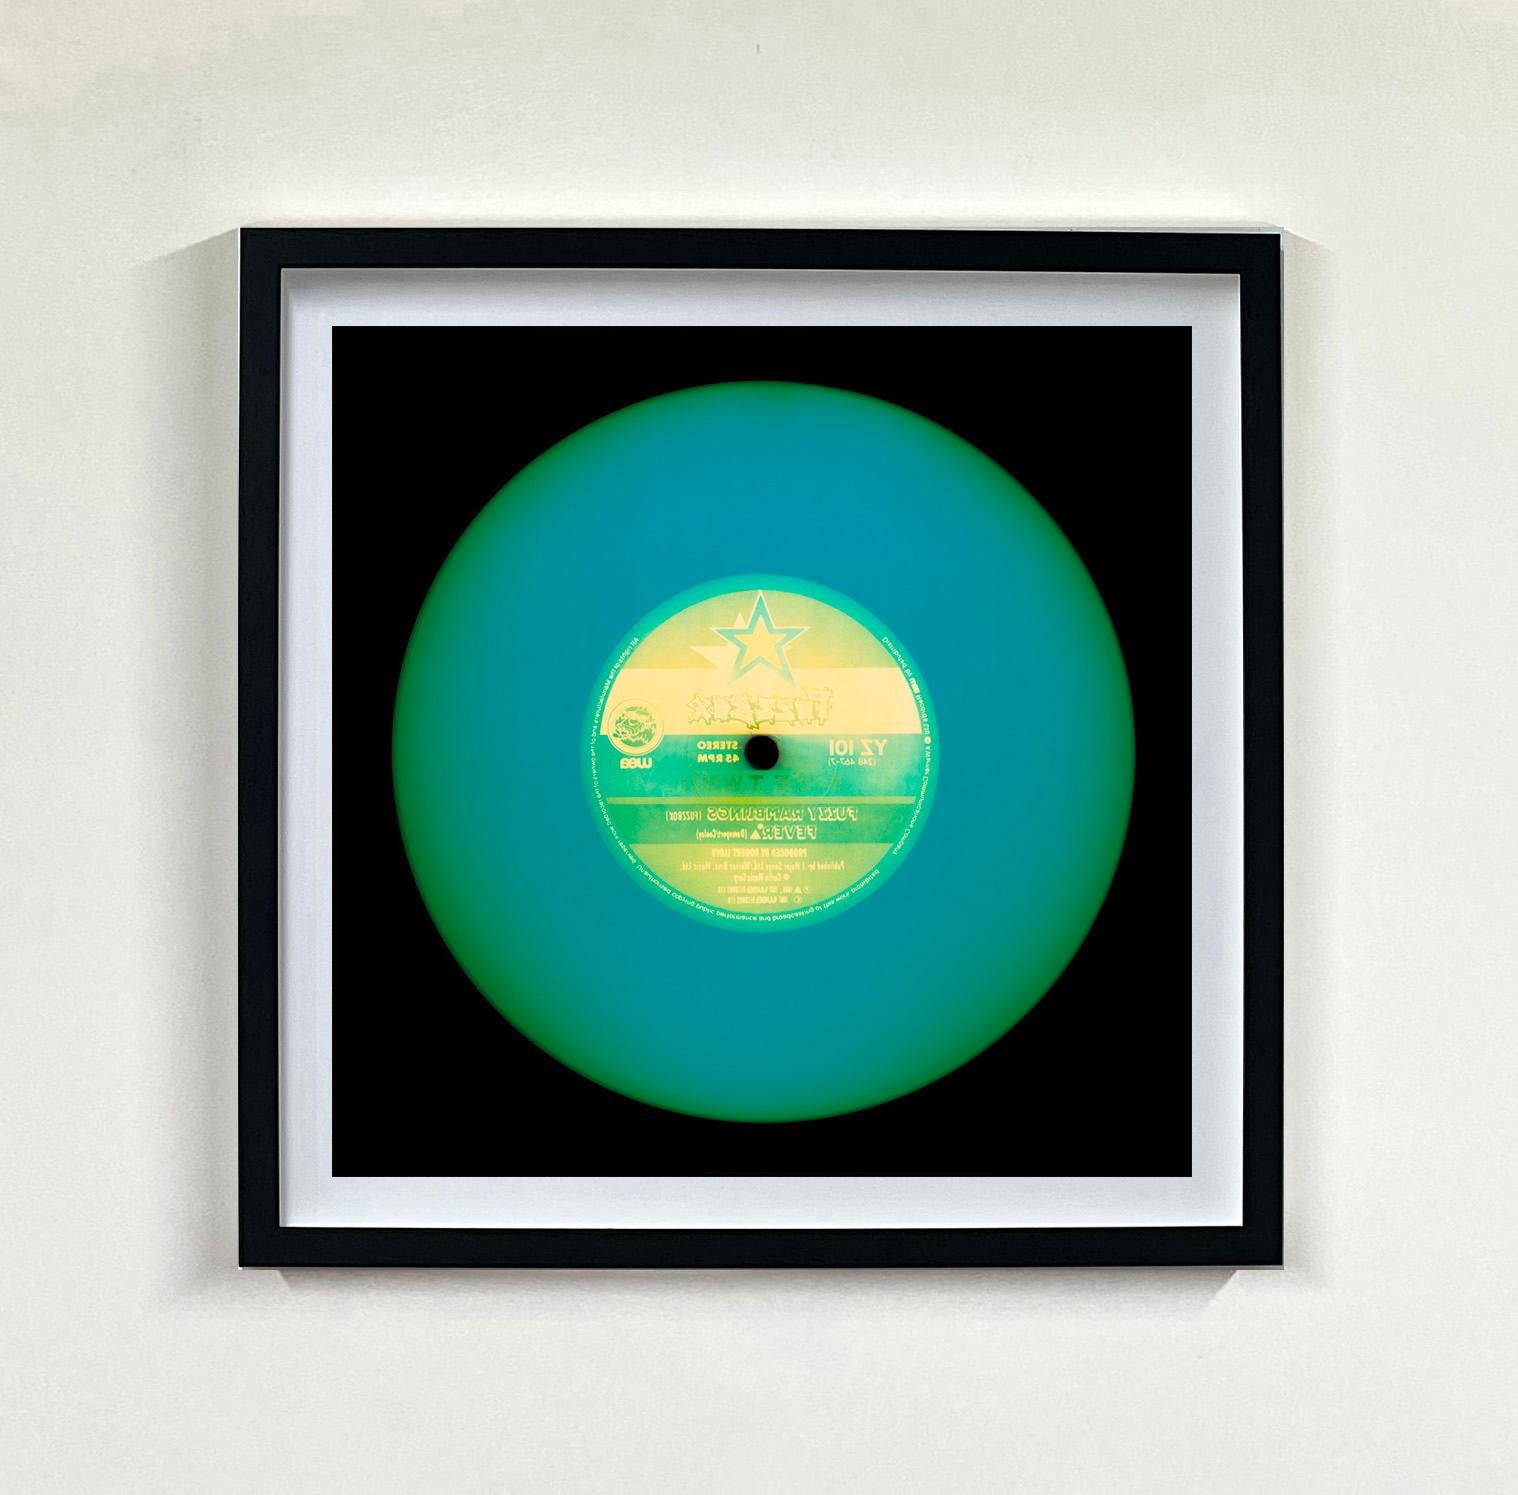 Heidler & Heeps Vinyl Collection'S Zehnteilige Multicolor Installation.
Die renommierten zeitgenössischen Fotografen Richard Heeps und Natasha Heidler haben für diese wunderschöne, faszinierende Kollektion zusammengearbeitet. Ein Fest der